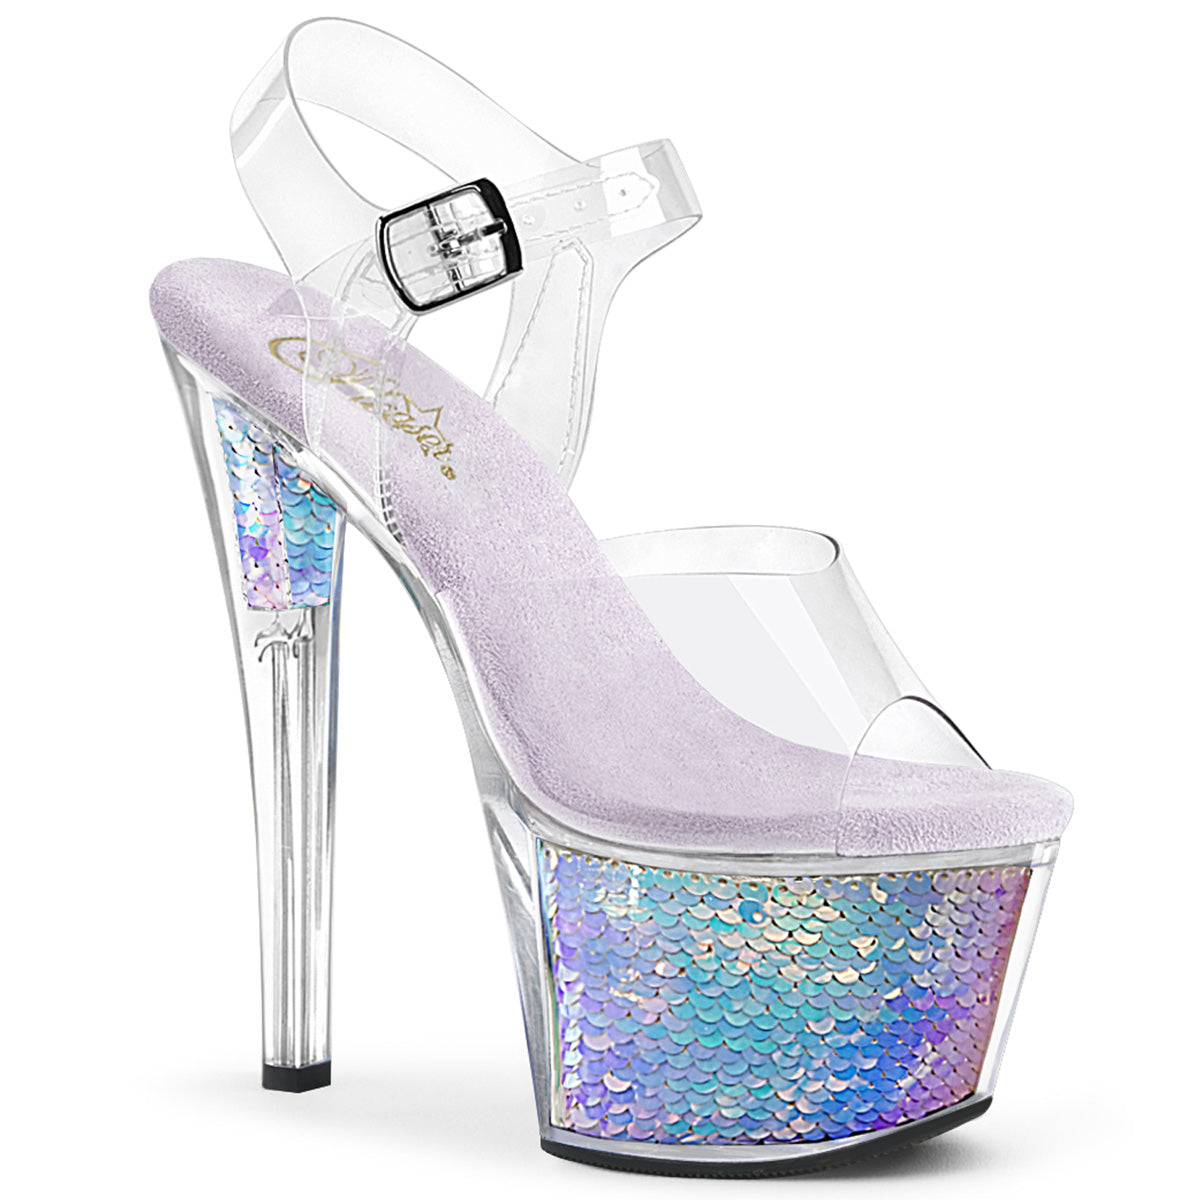 Pleaser SKY-308MC Clear-Lavender Hologram Inserts 7 Inch Heel, 2 3/4 Inch Platform Ankle Strap Sandal